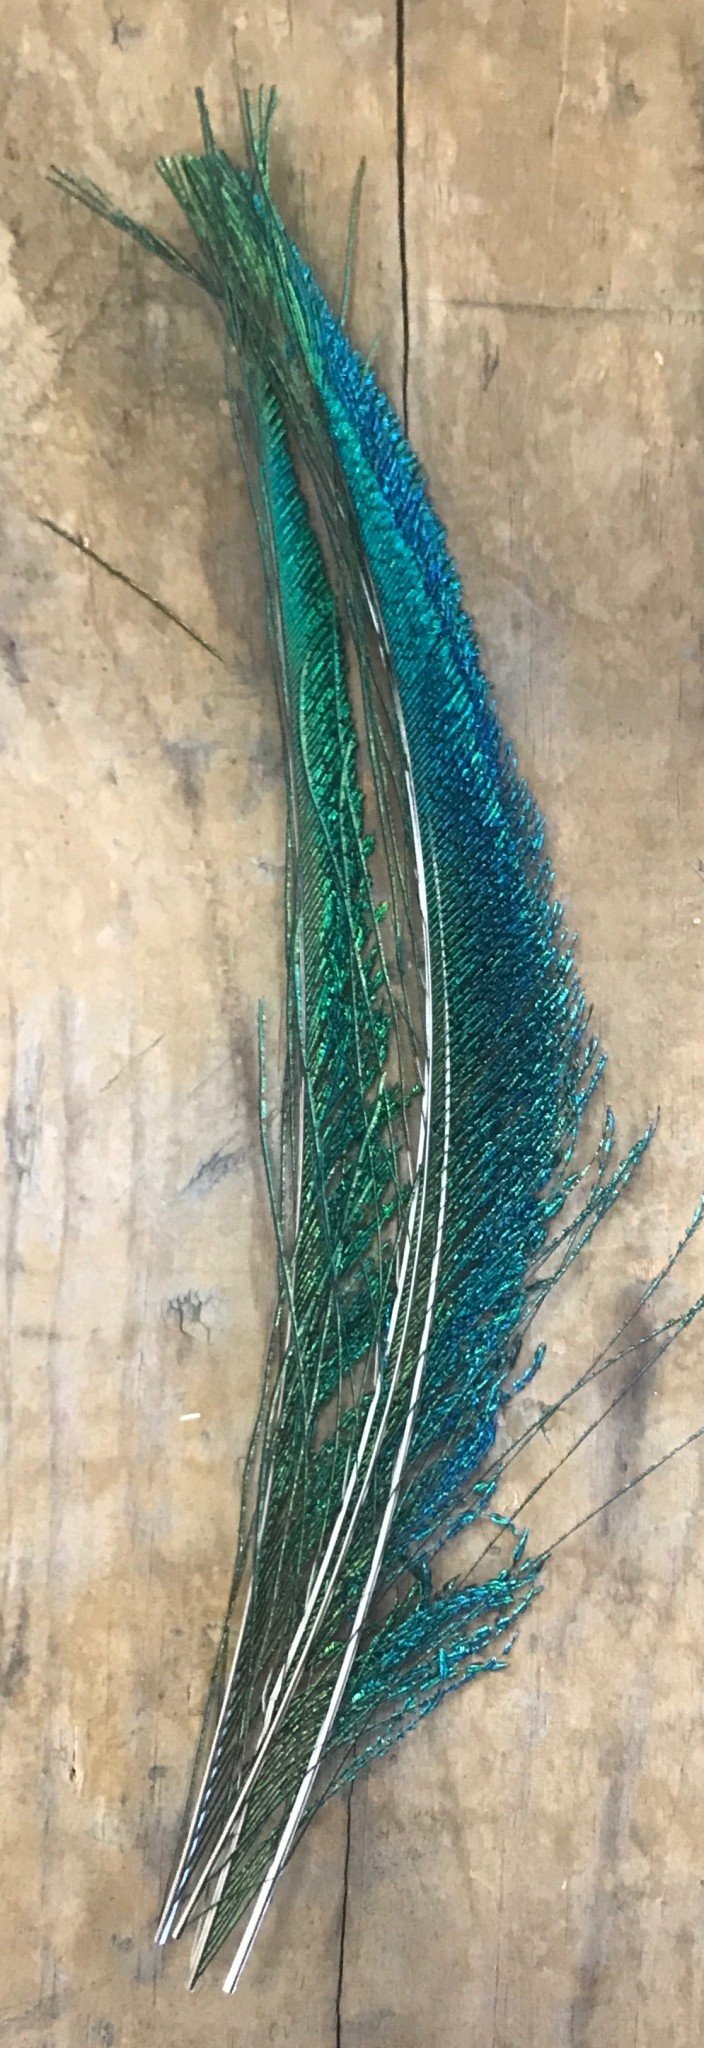 Peacock Swords